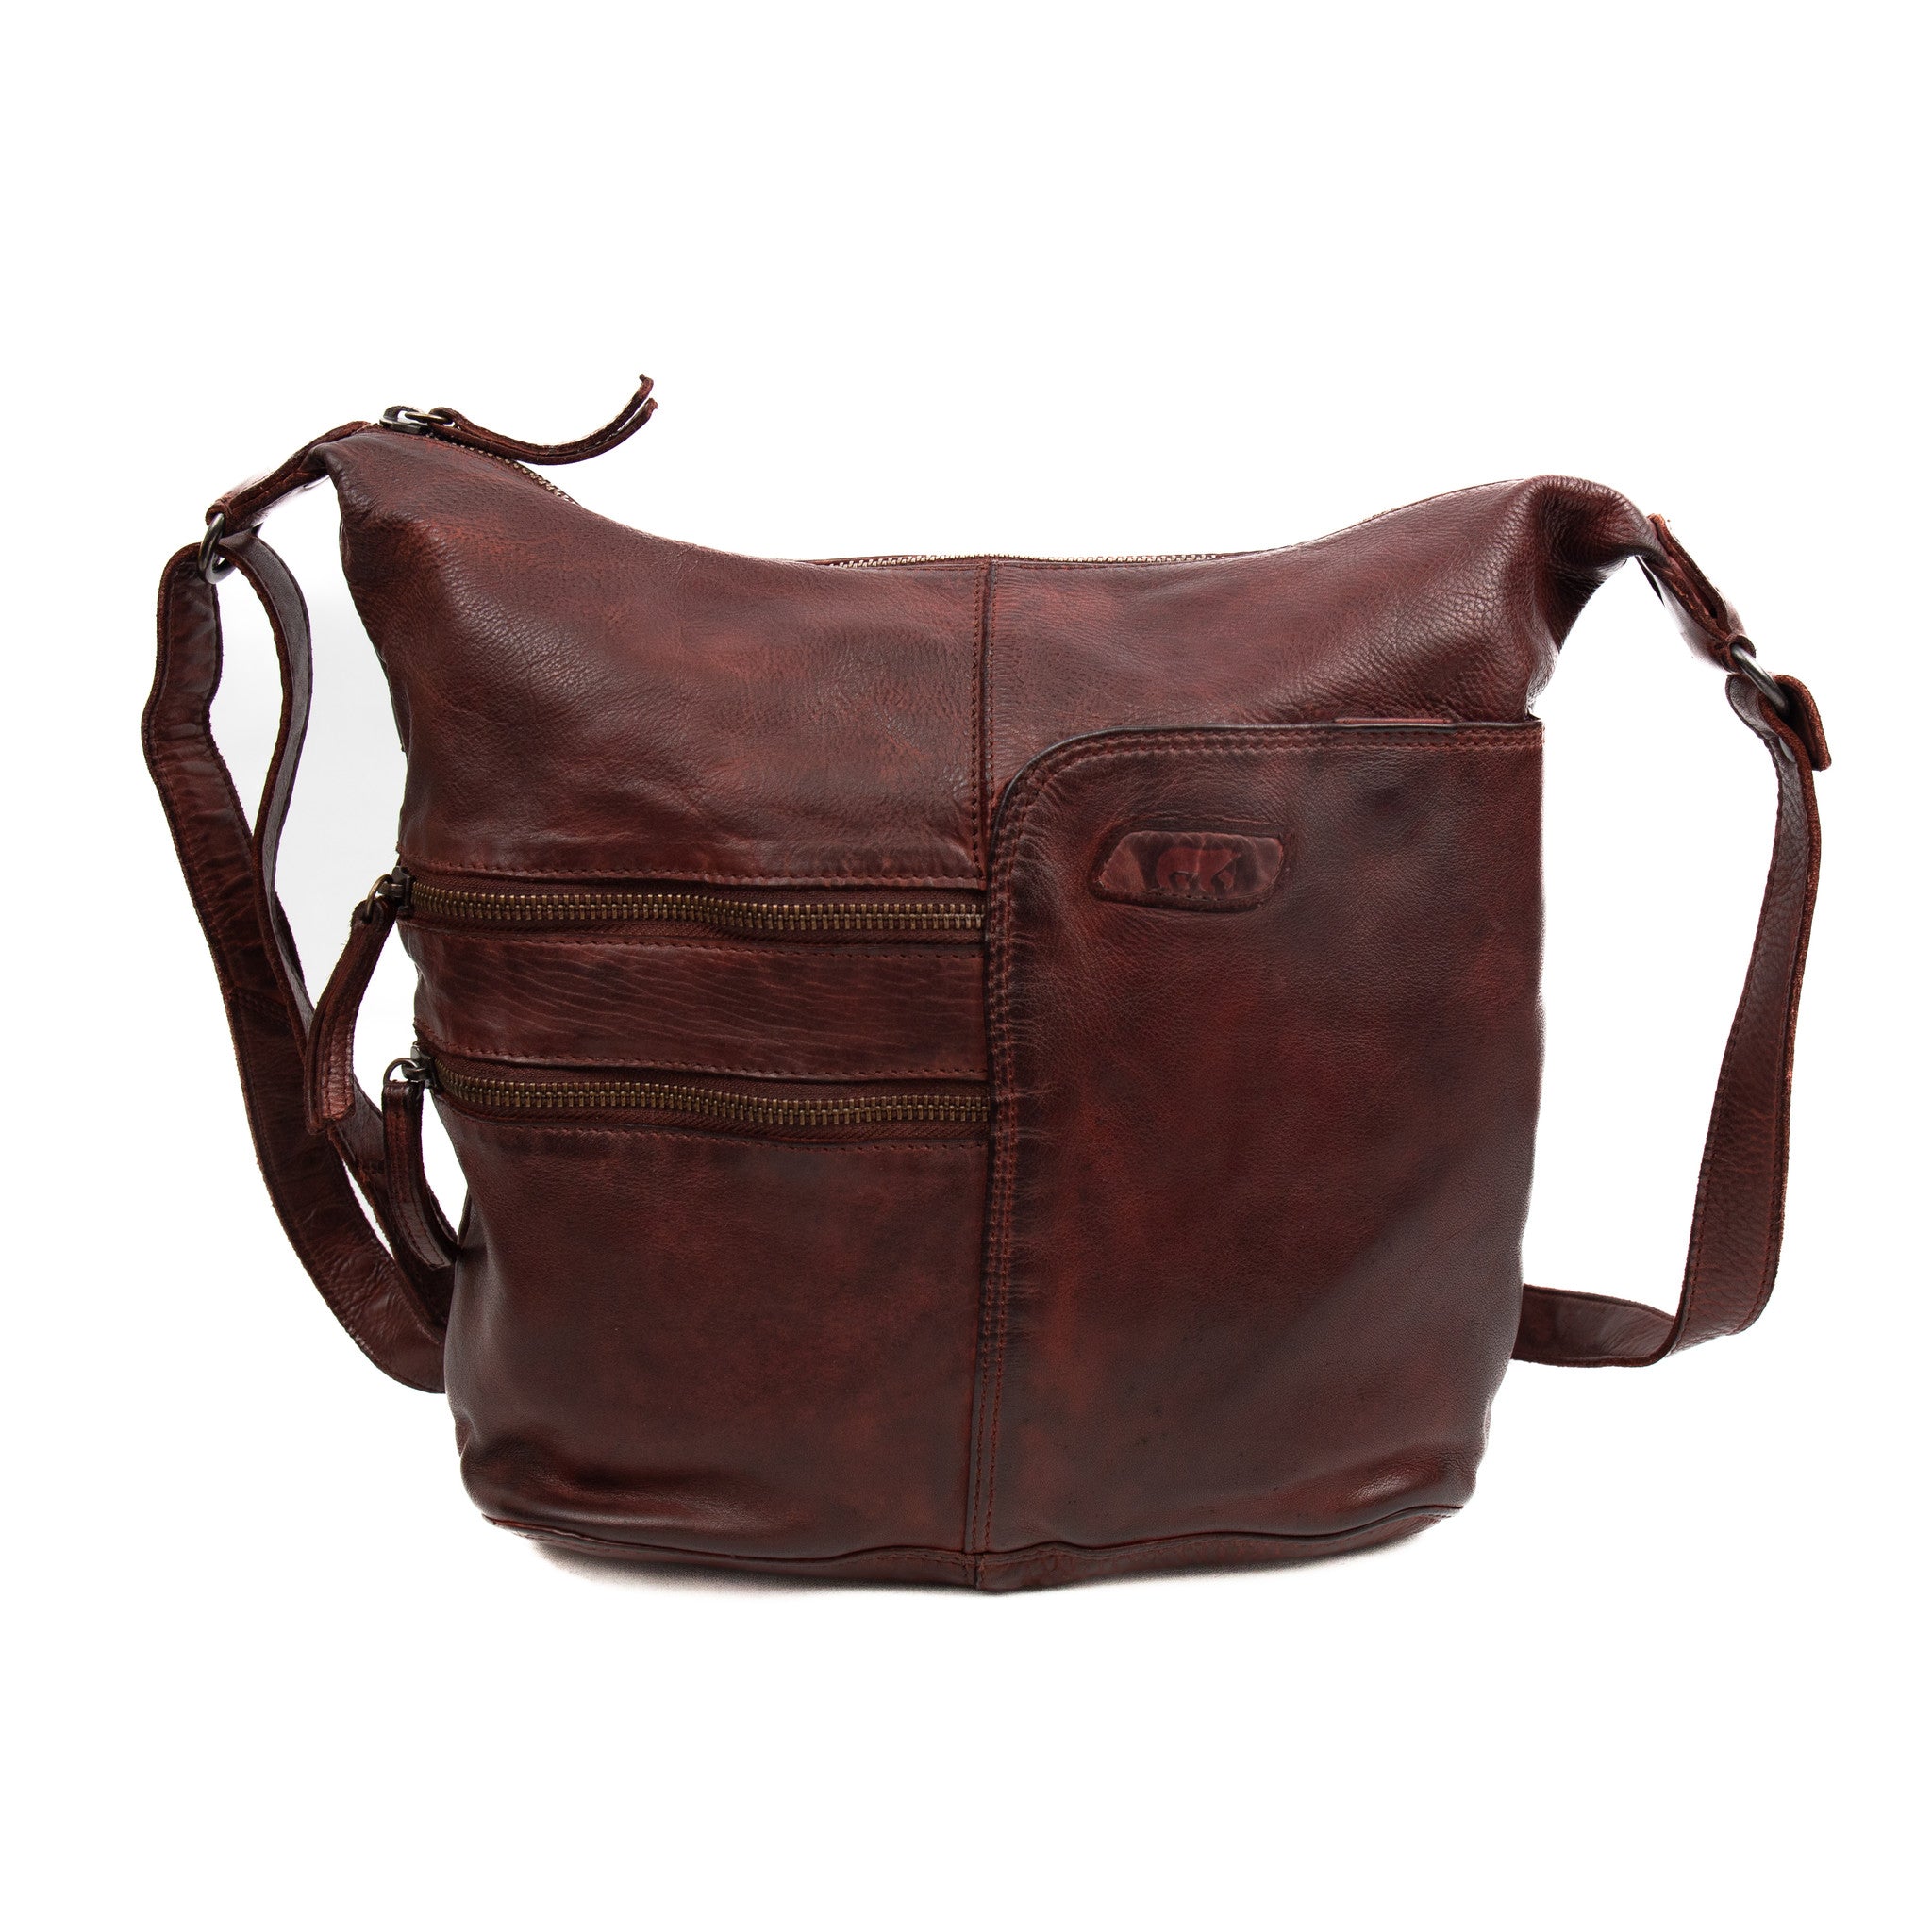 Shoulder bag 'Frieda' burgundy - CL 40498